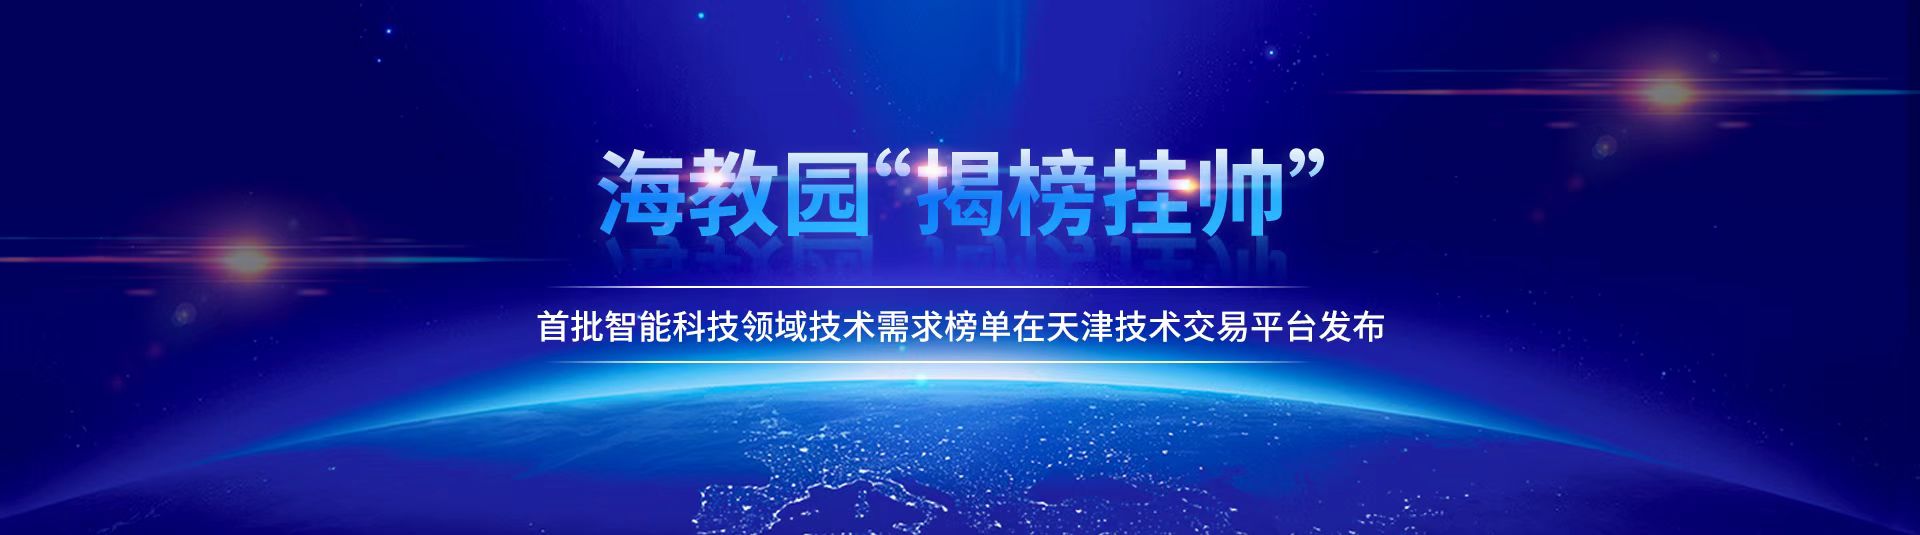 海教园“揭榜挂帅”首批智能科技领域技术需求榜单在天津技术交易平台发布